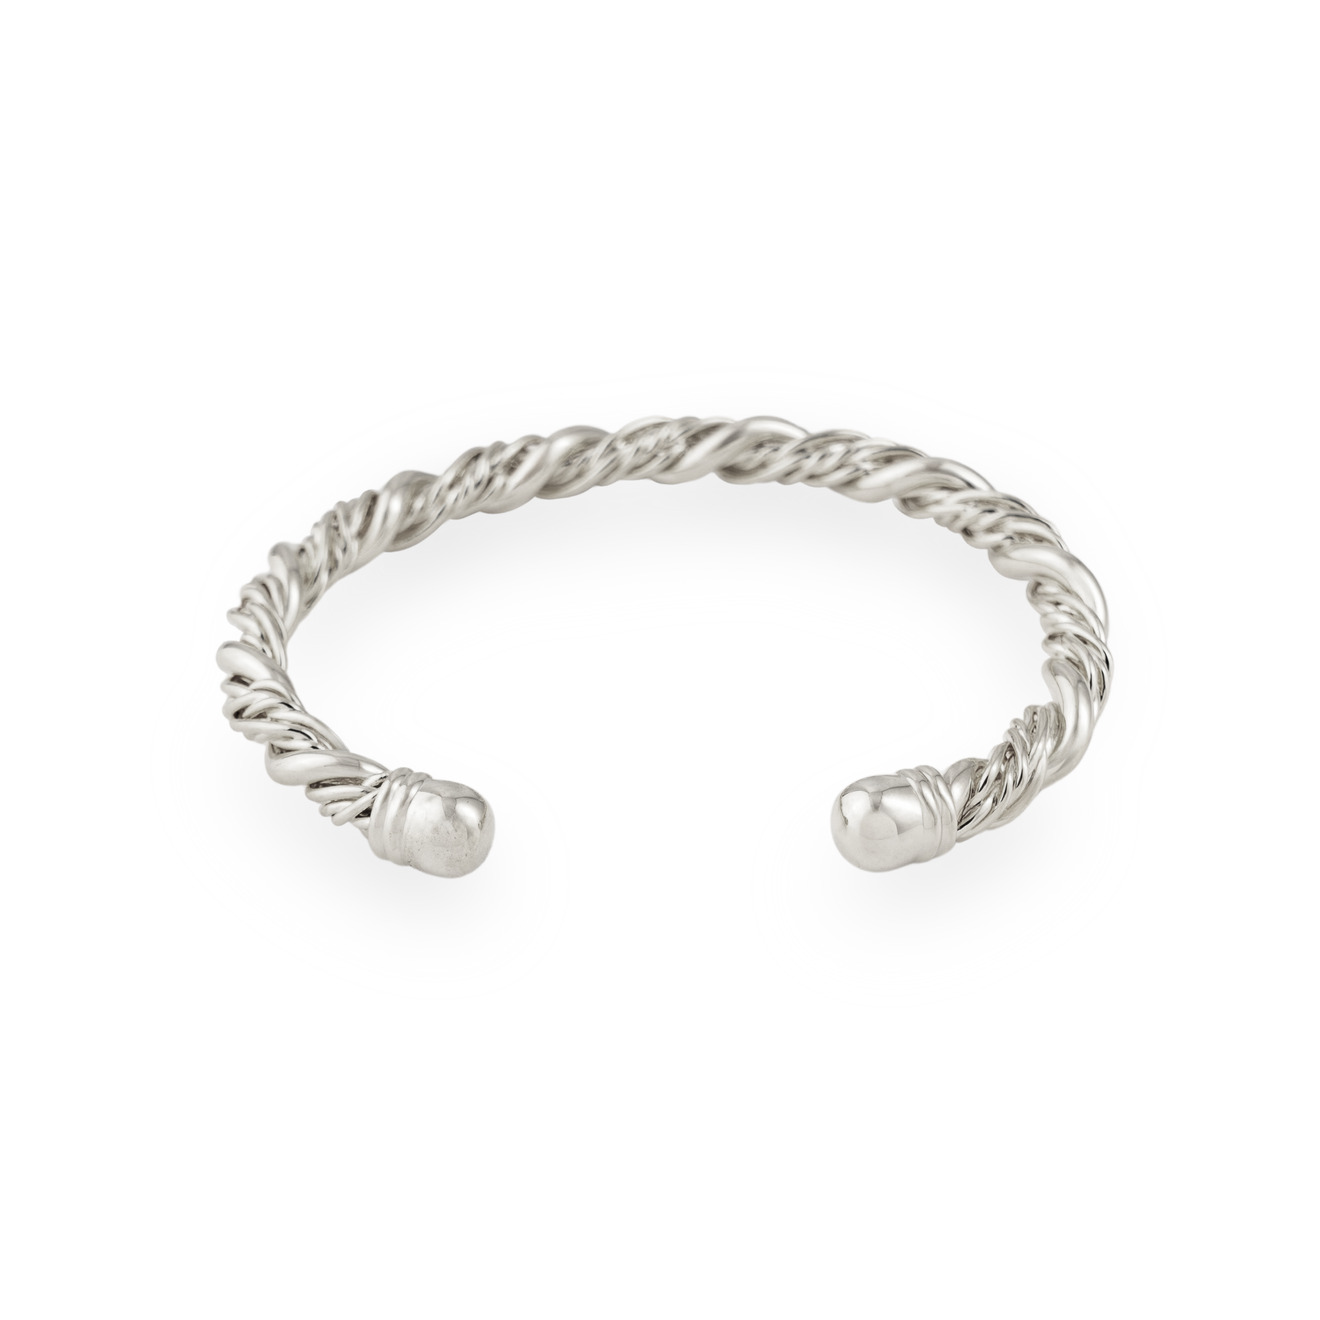 Free Form Jewelry Серебристый браслет перекрученный free form jewelry серебристый браслет цепь с перламутром